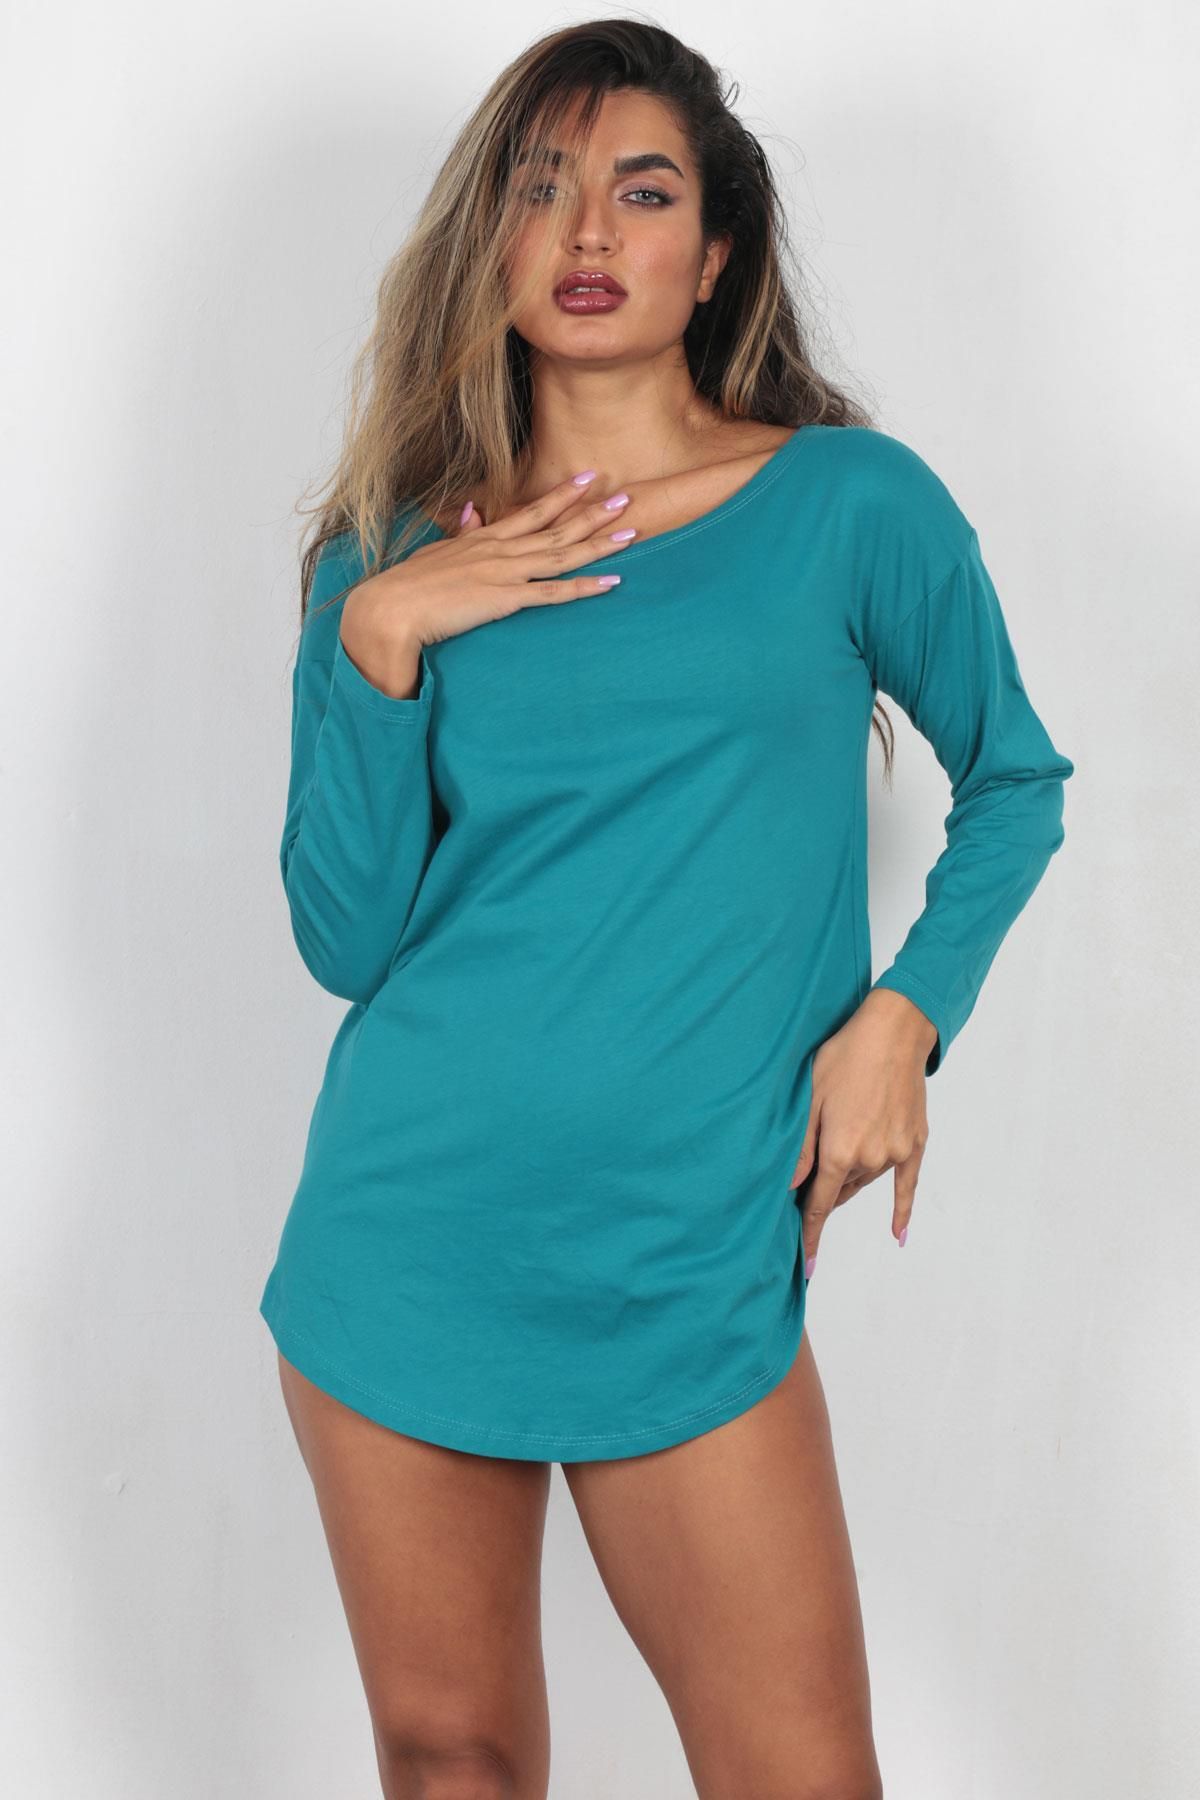 Forzuzu Kadın Çağla % 100 Pamuk Uzun Sweatshirt Model Ev Giyim Gecelik